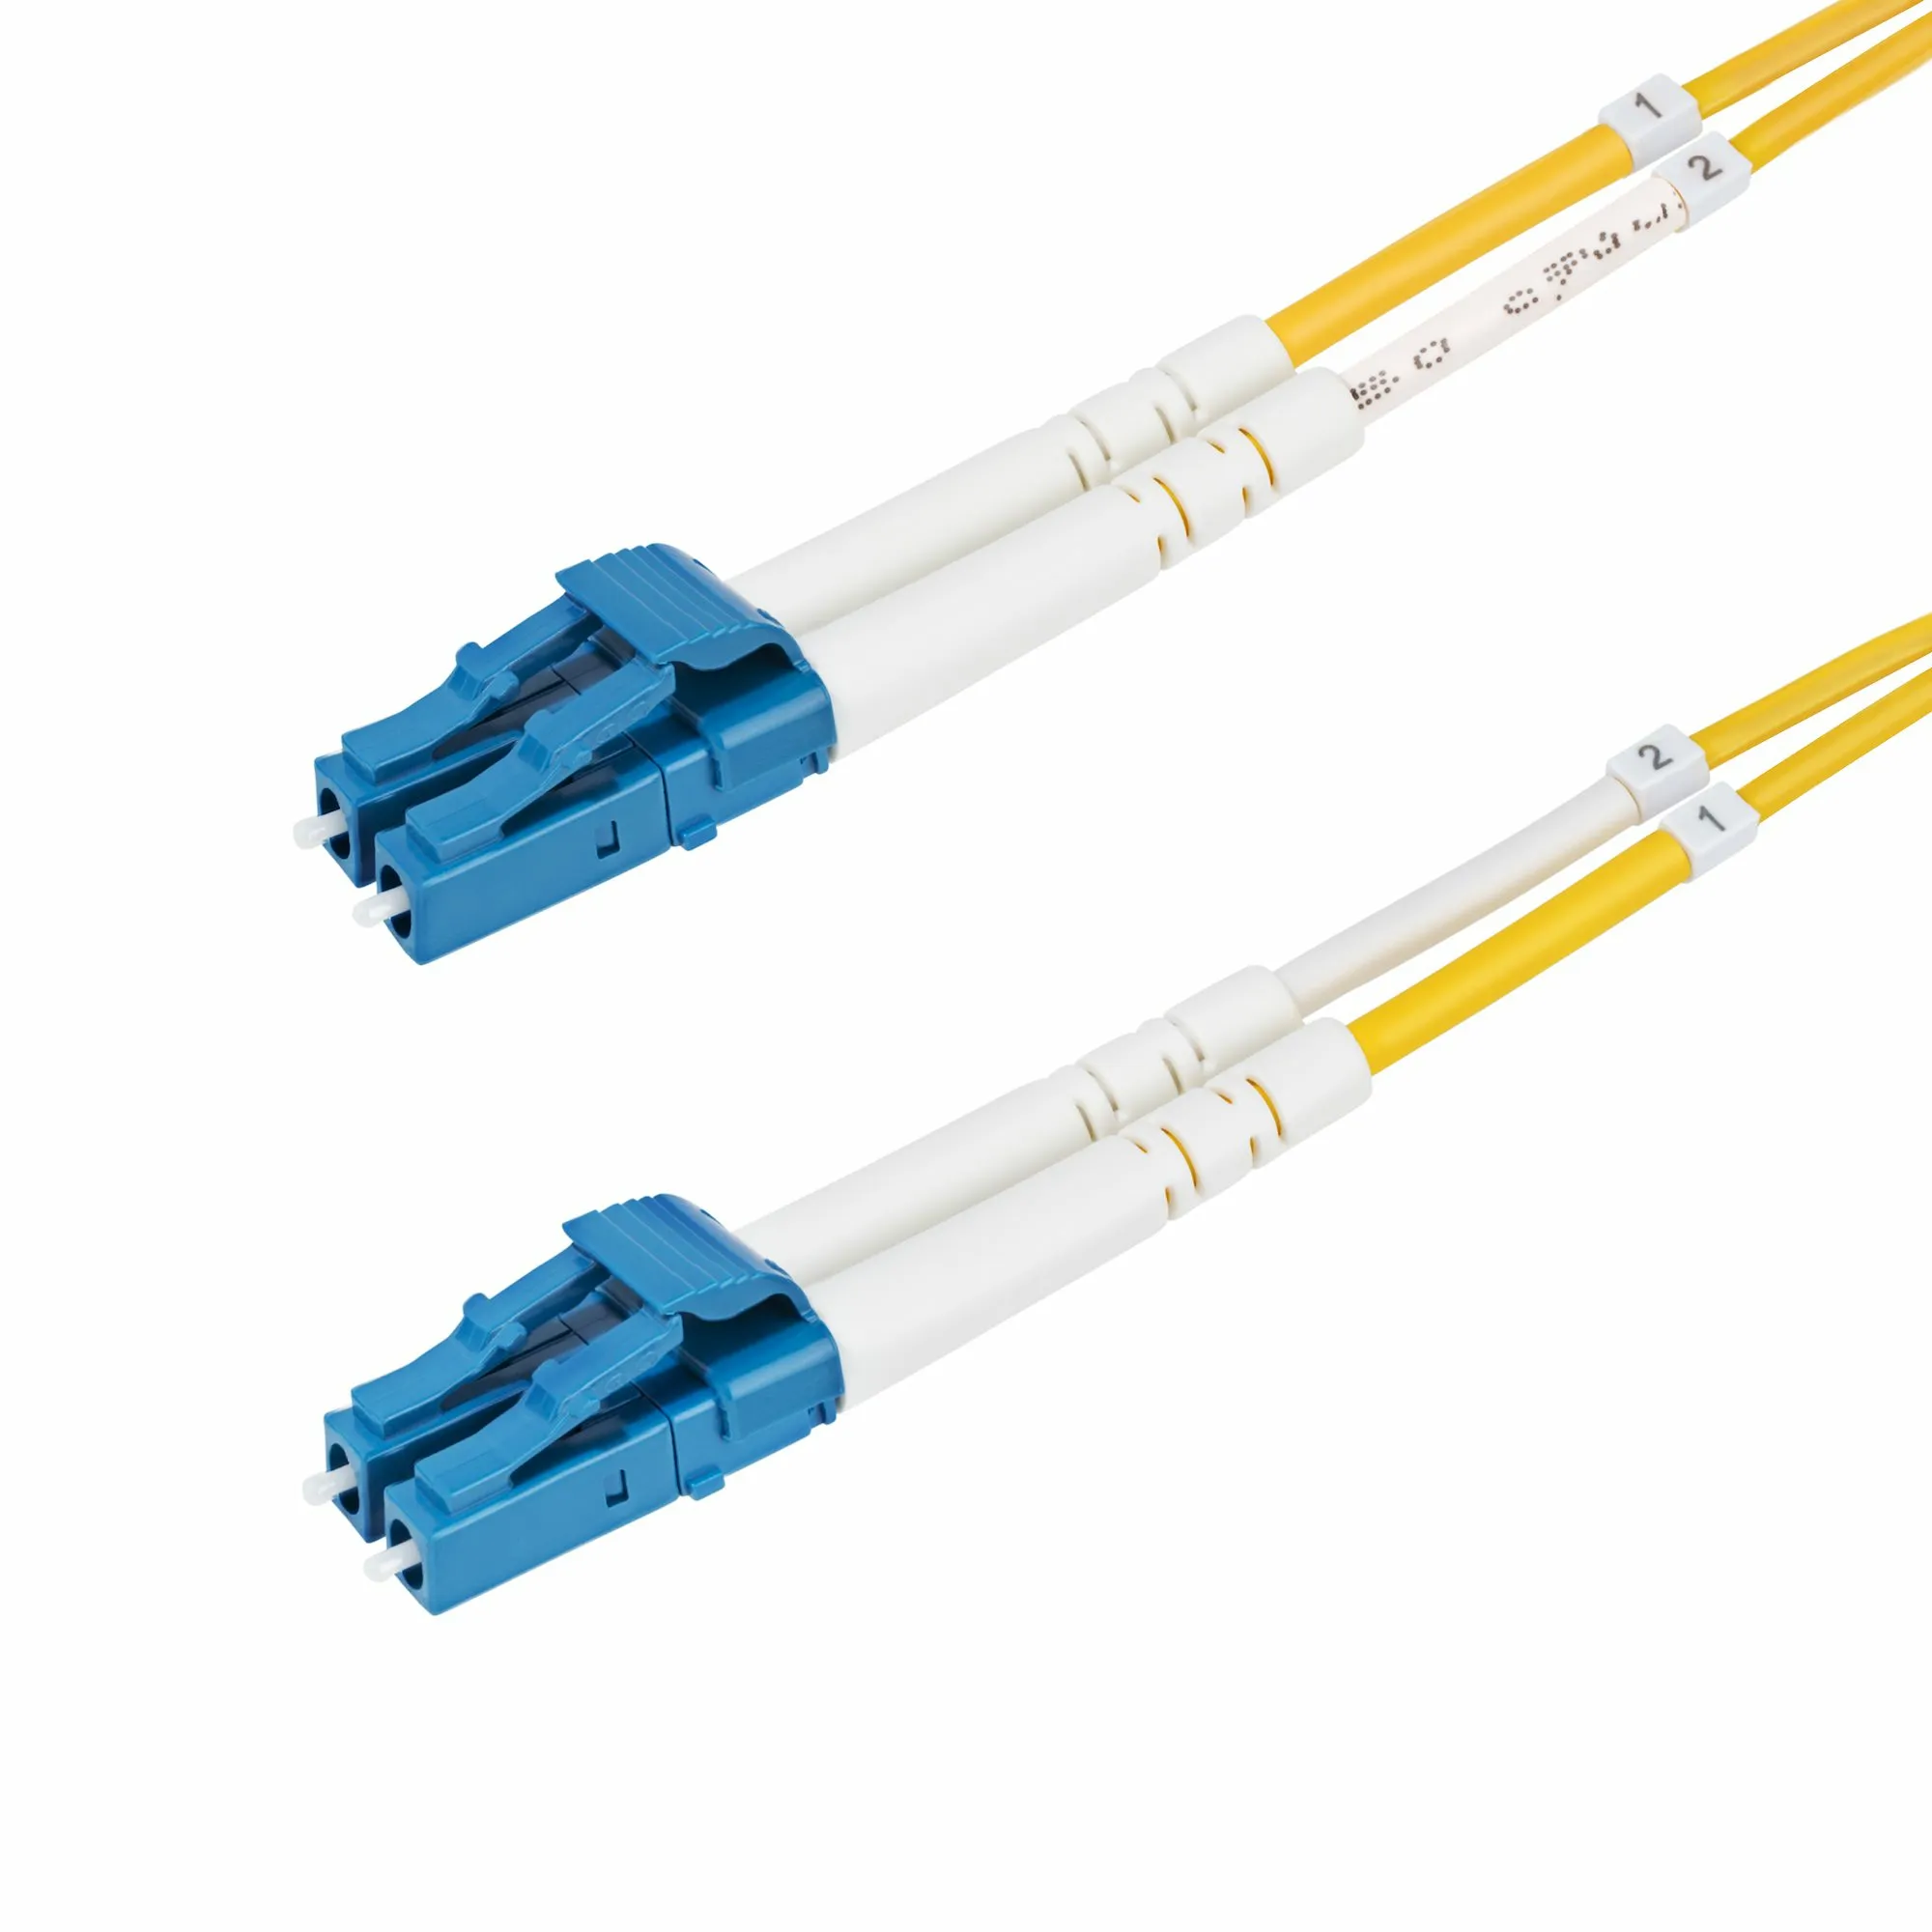 Achat StarTech.com Câble Fibre Optique de 25m Duplex Monomode au meilleur prix